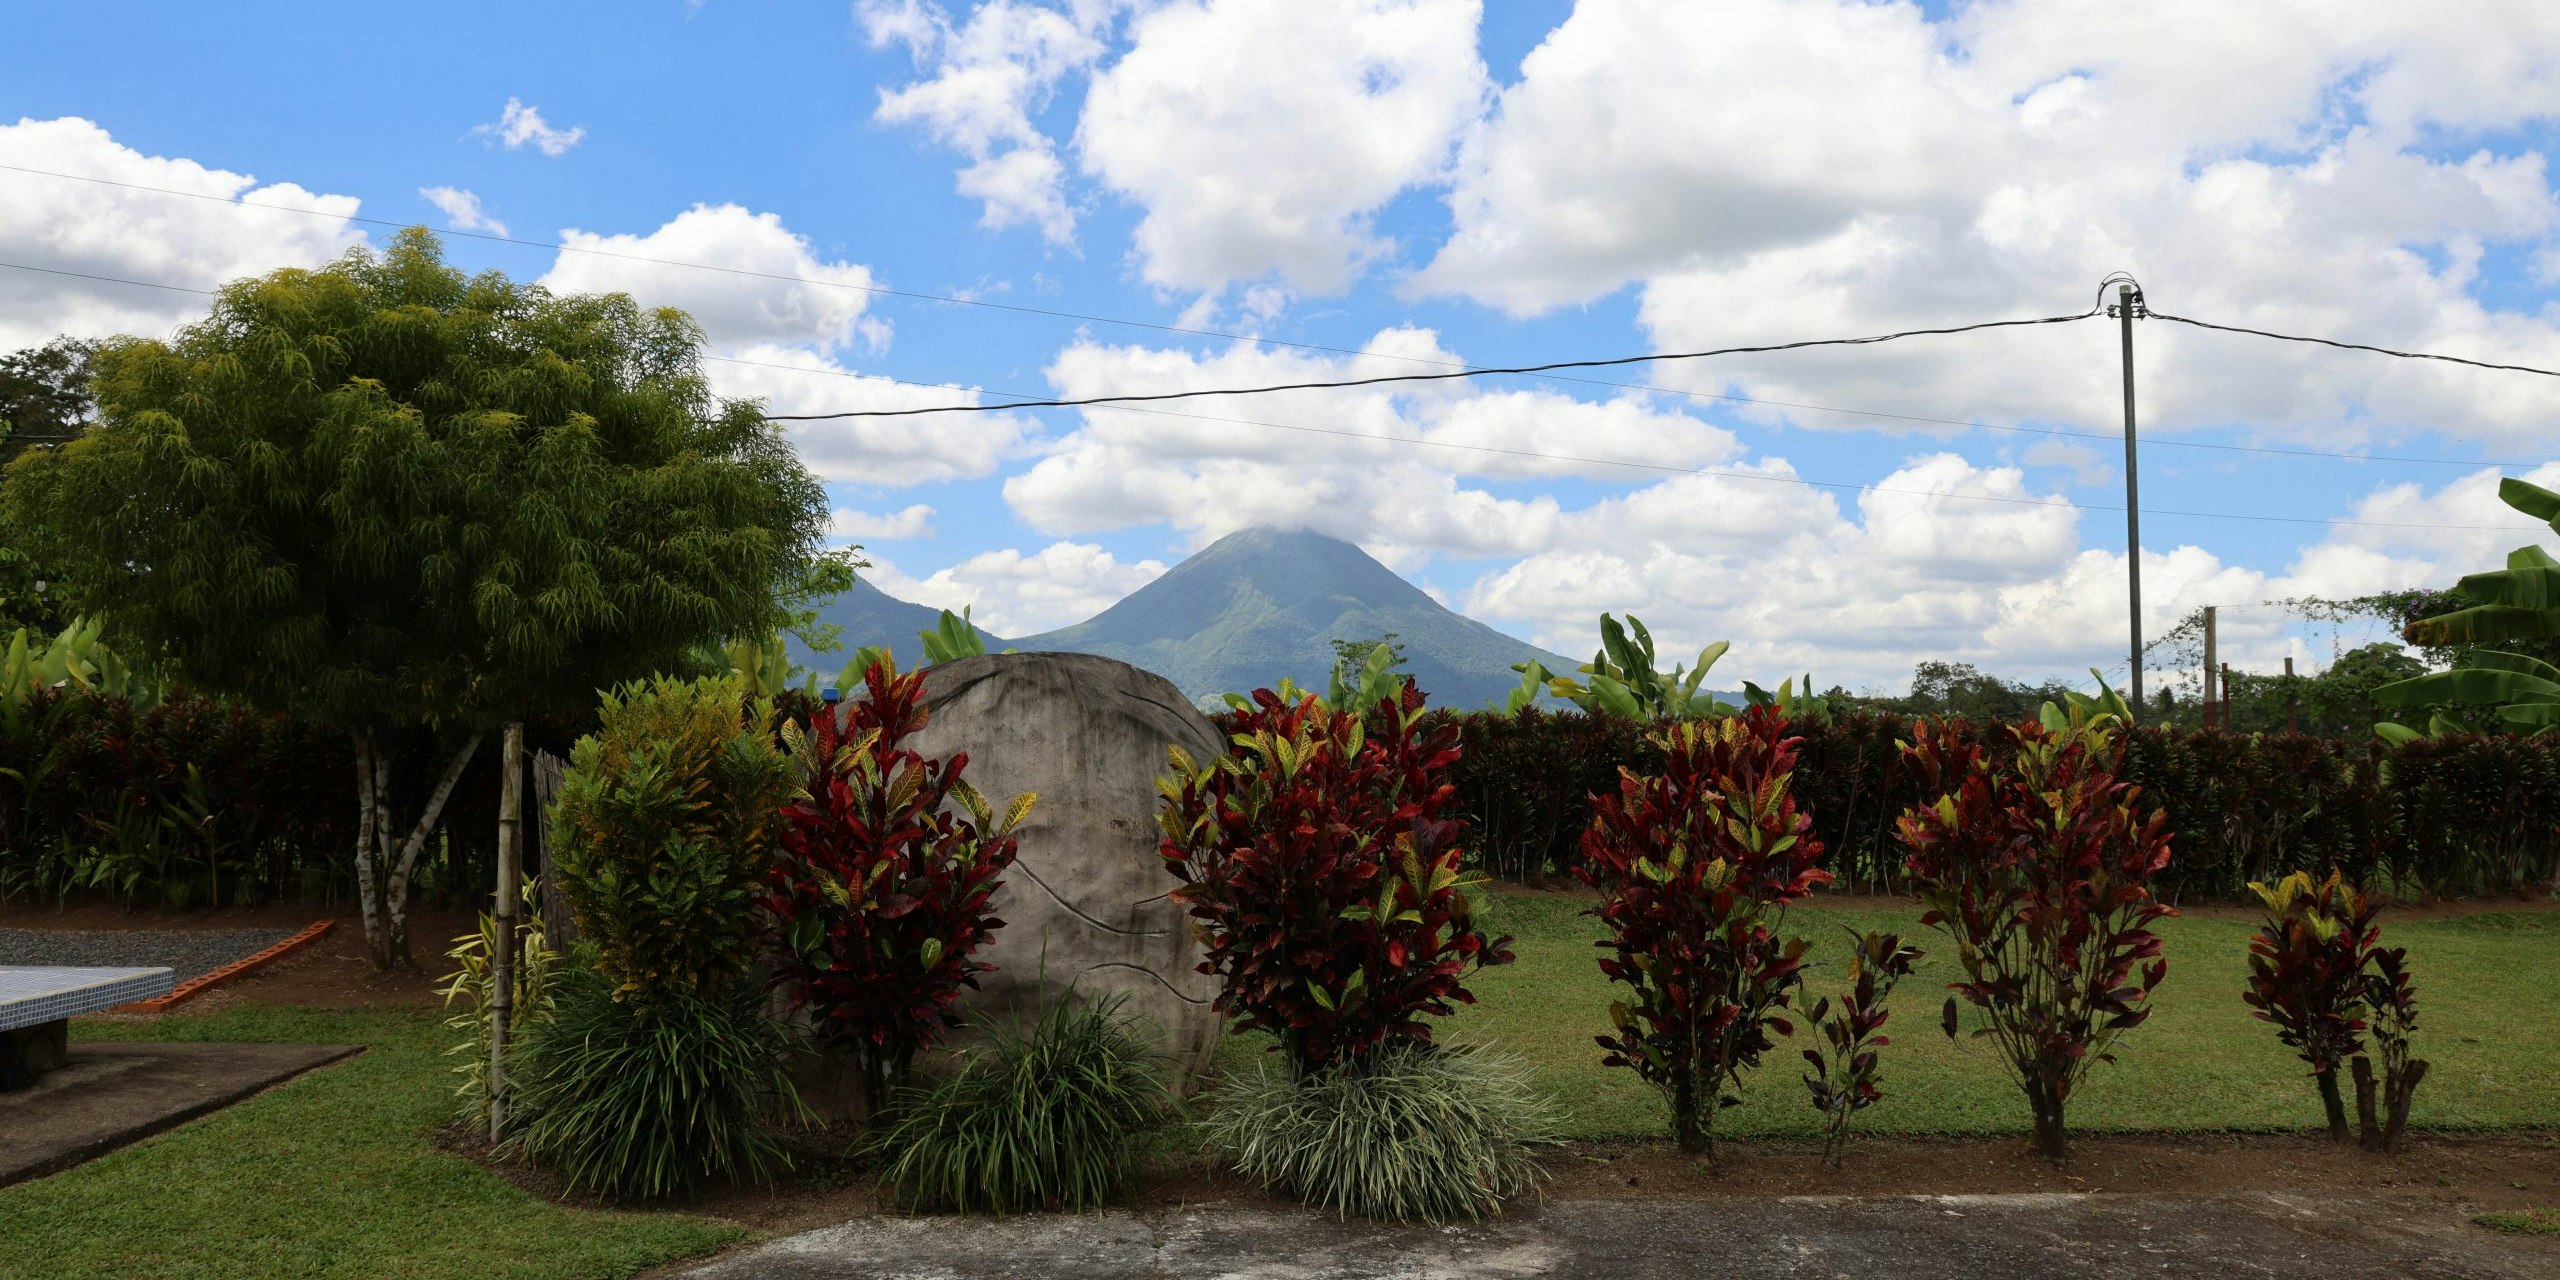 Costa Rica: Volcano and Rainforest Service